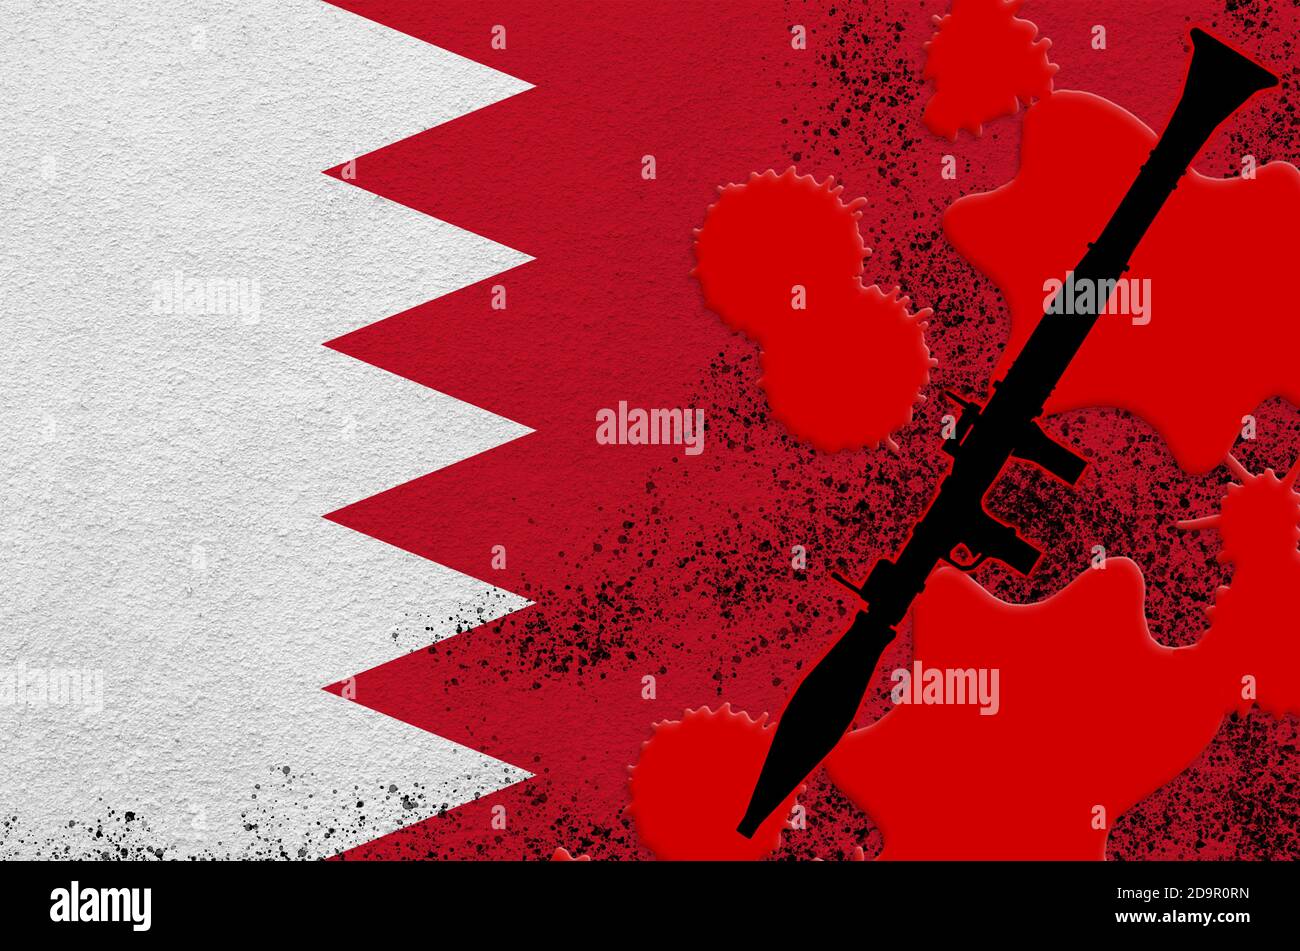 Drapeau du Bahreïn et lance-grenade noir RPG-7 propulsé par une fusée de sang rouge. Concept d'attaque terroriste ou d'opérations militaires avec un résultat mortel. DaN Banque D'Images